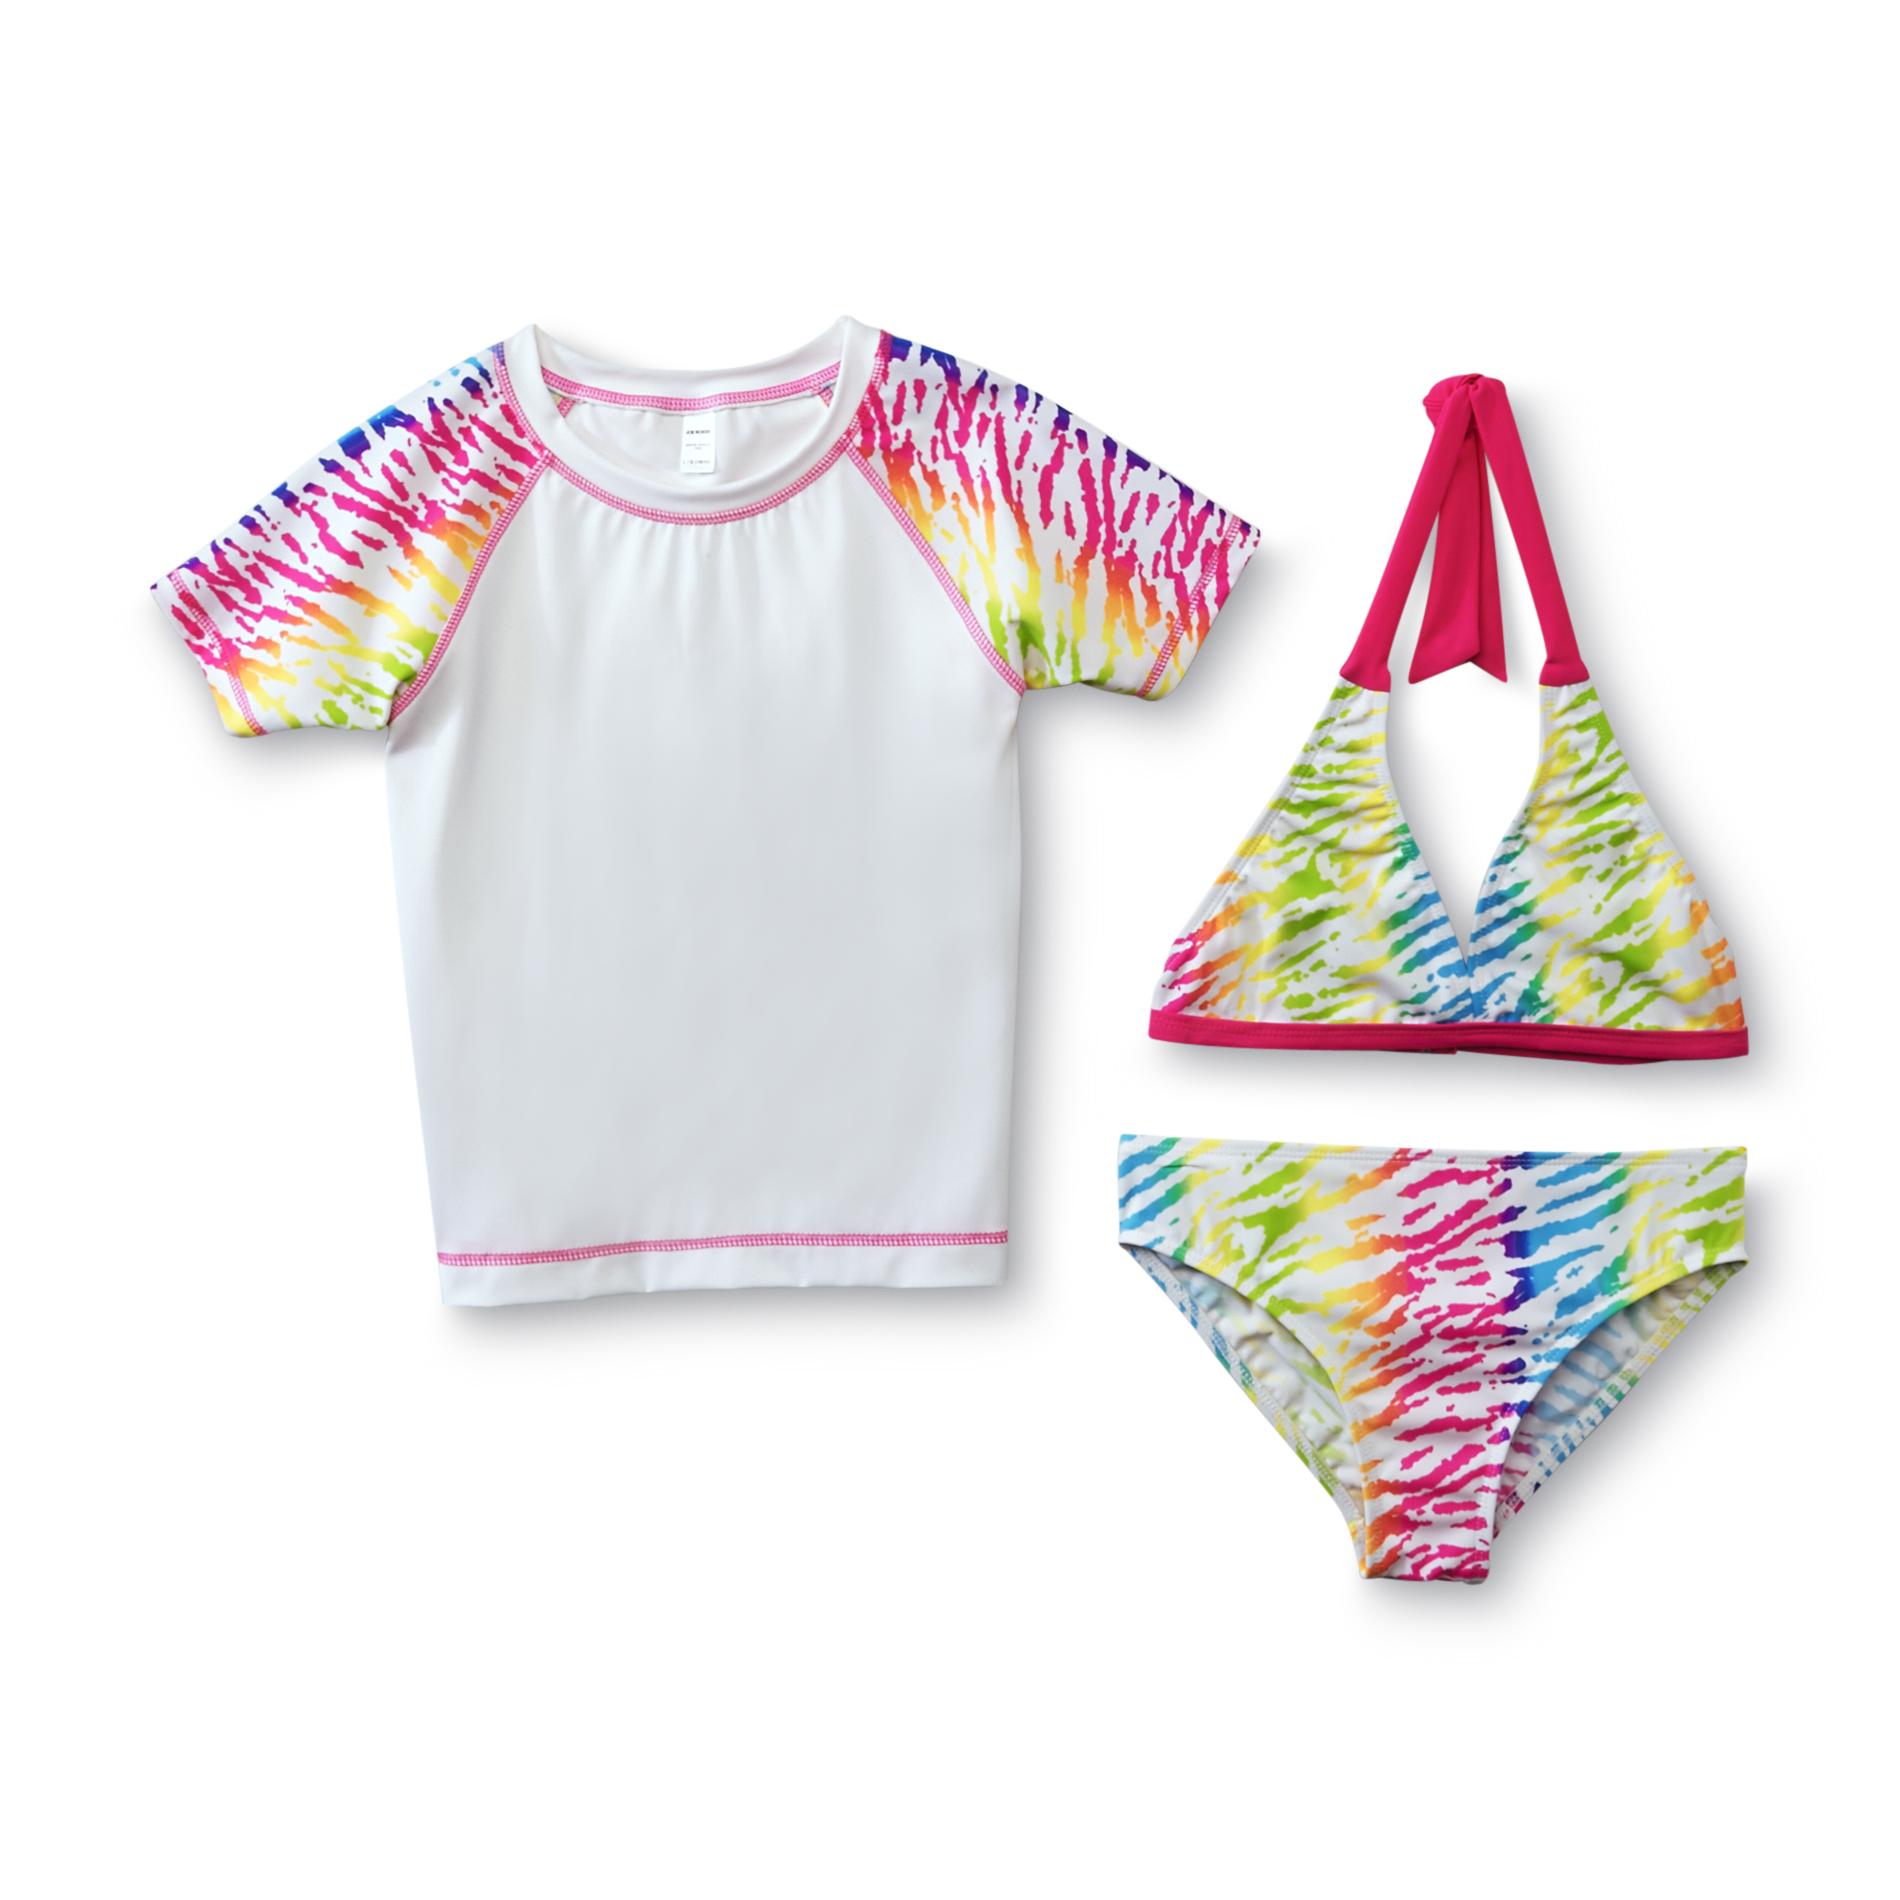 Joe Boxer Girl's Bikini Top  Bottoms & Swim Shirt - Zebra Print